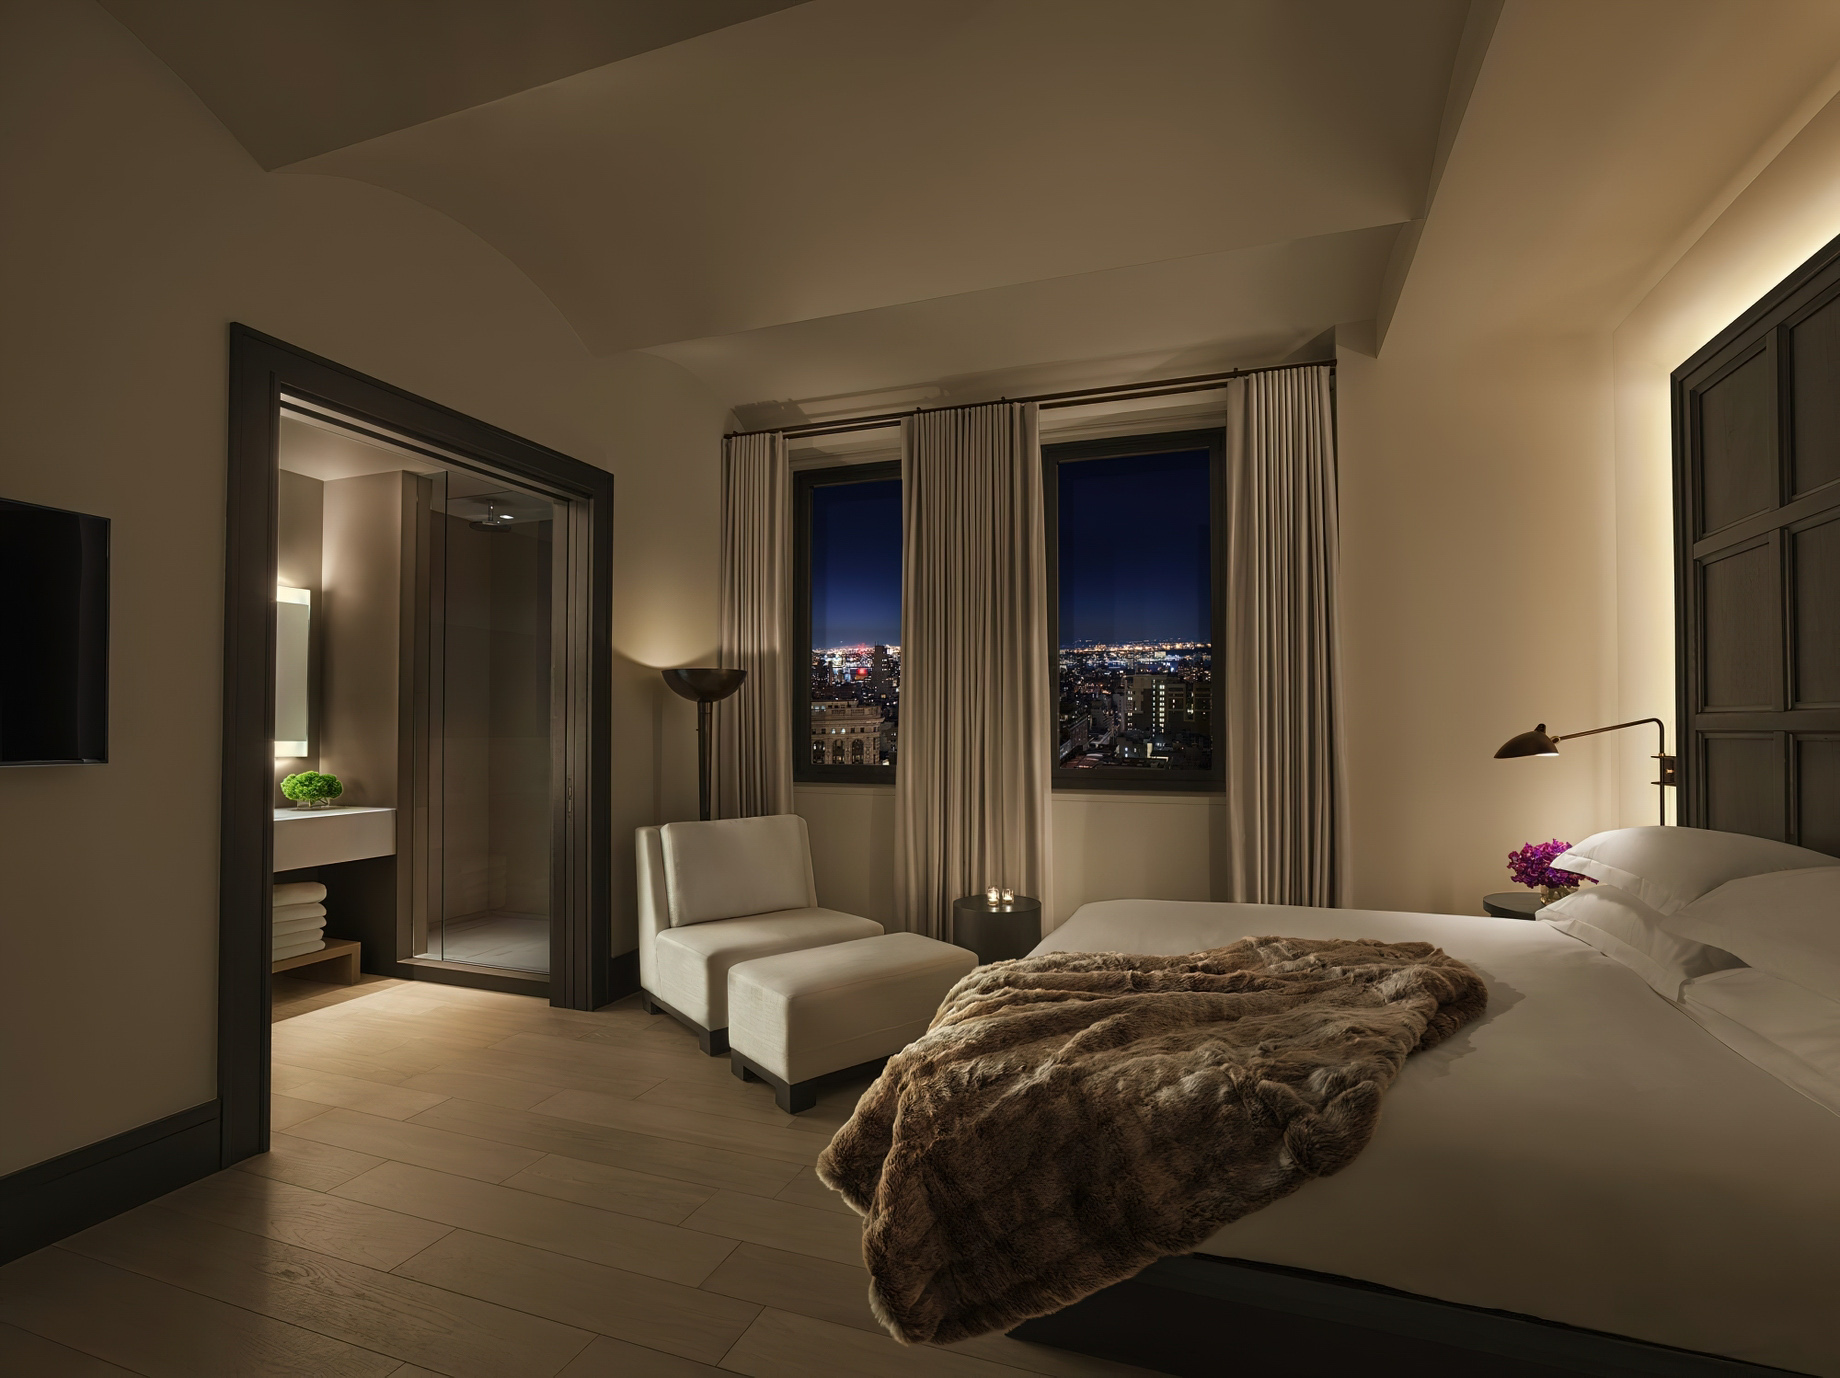 The New York EDITION Hotel – New York, NY, USA – Bedroom Interior Decor